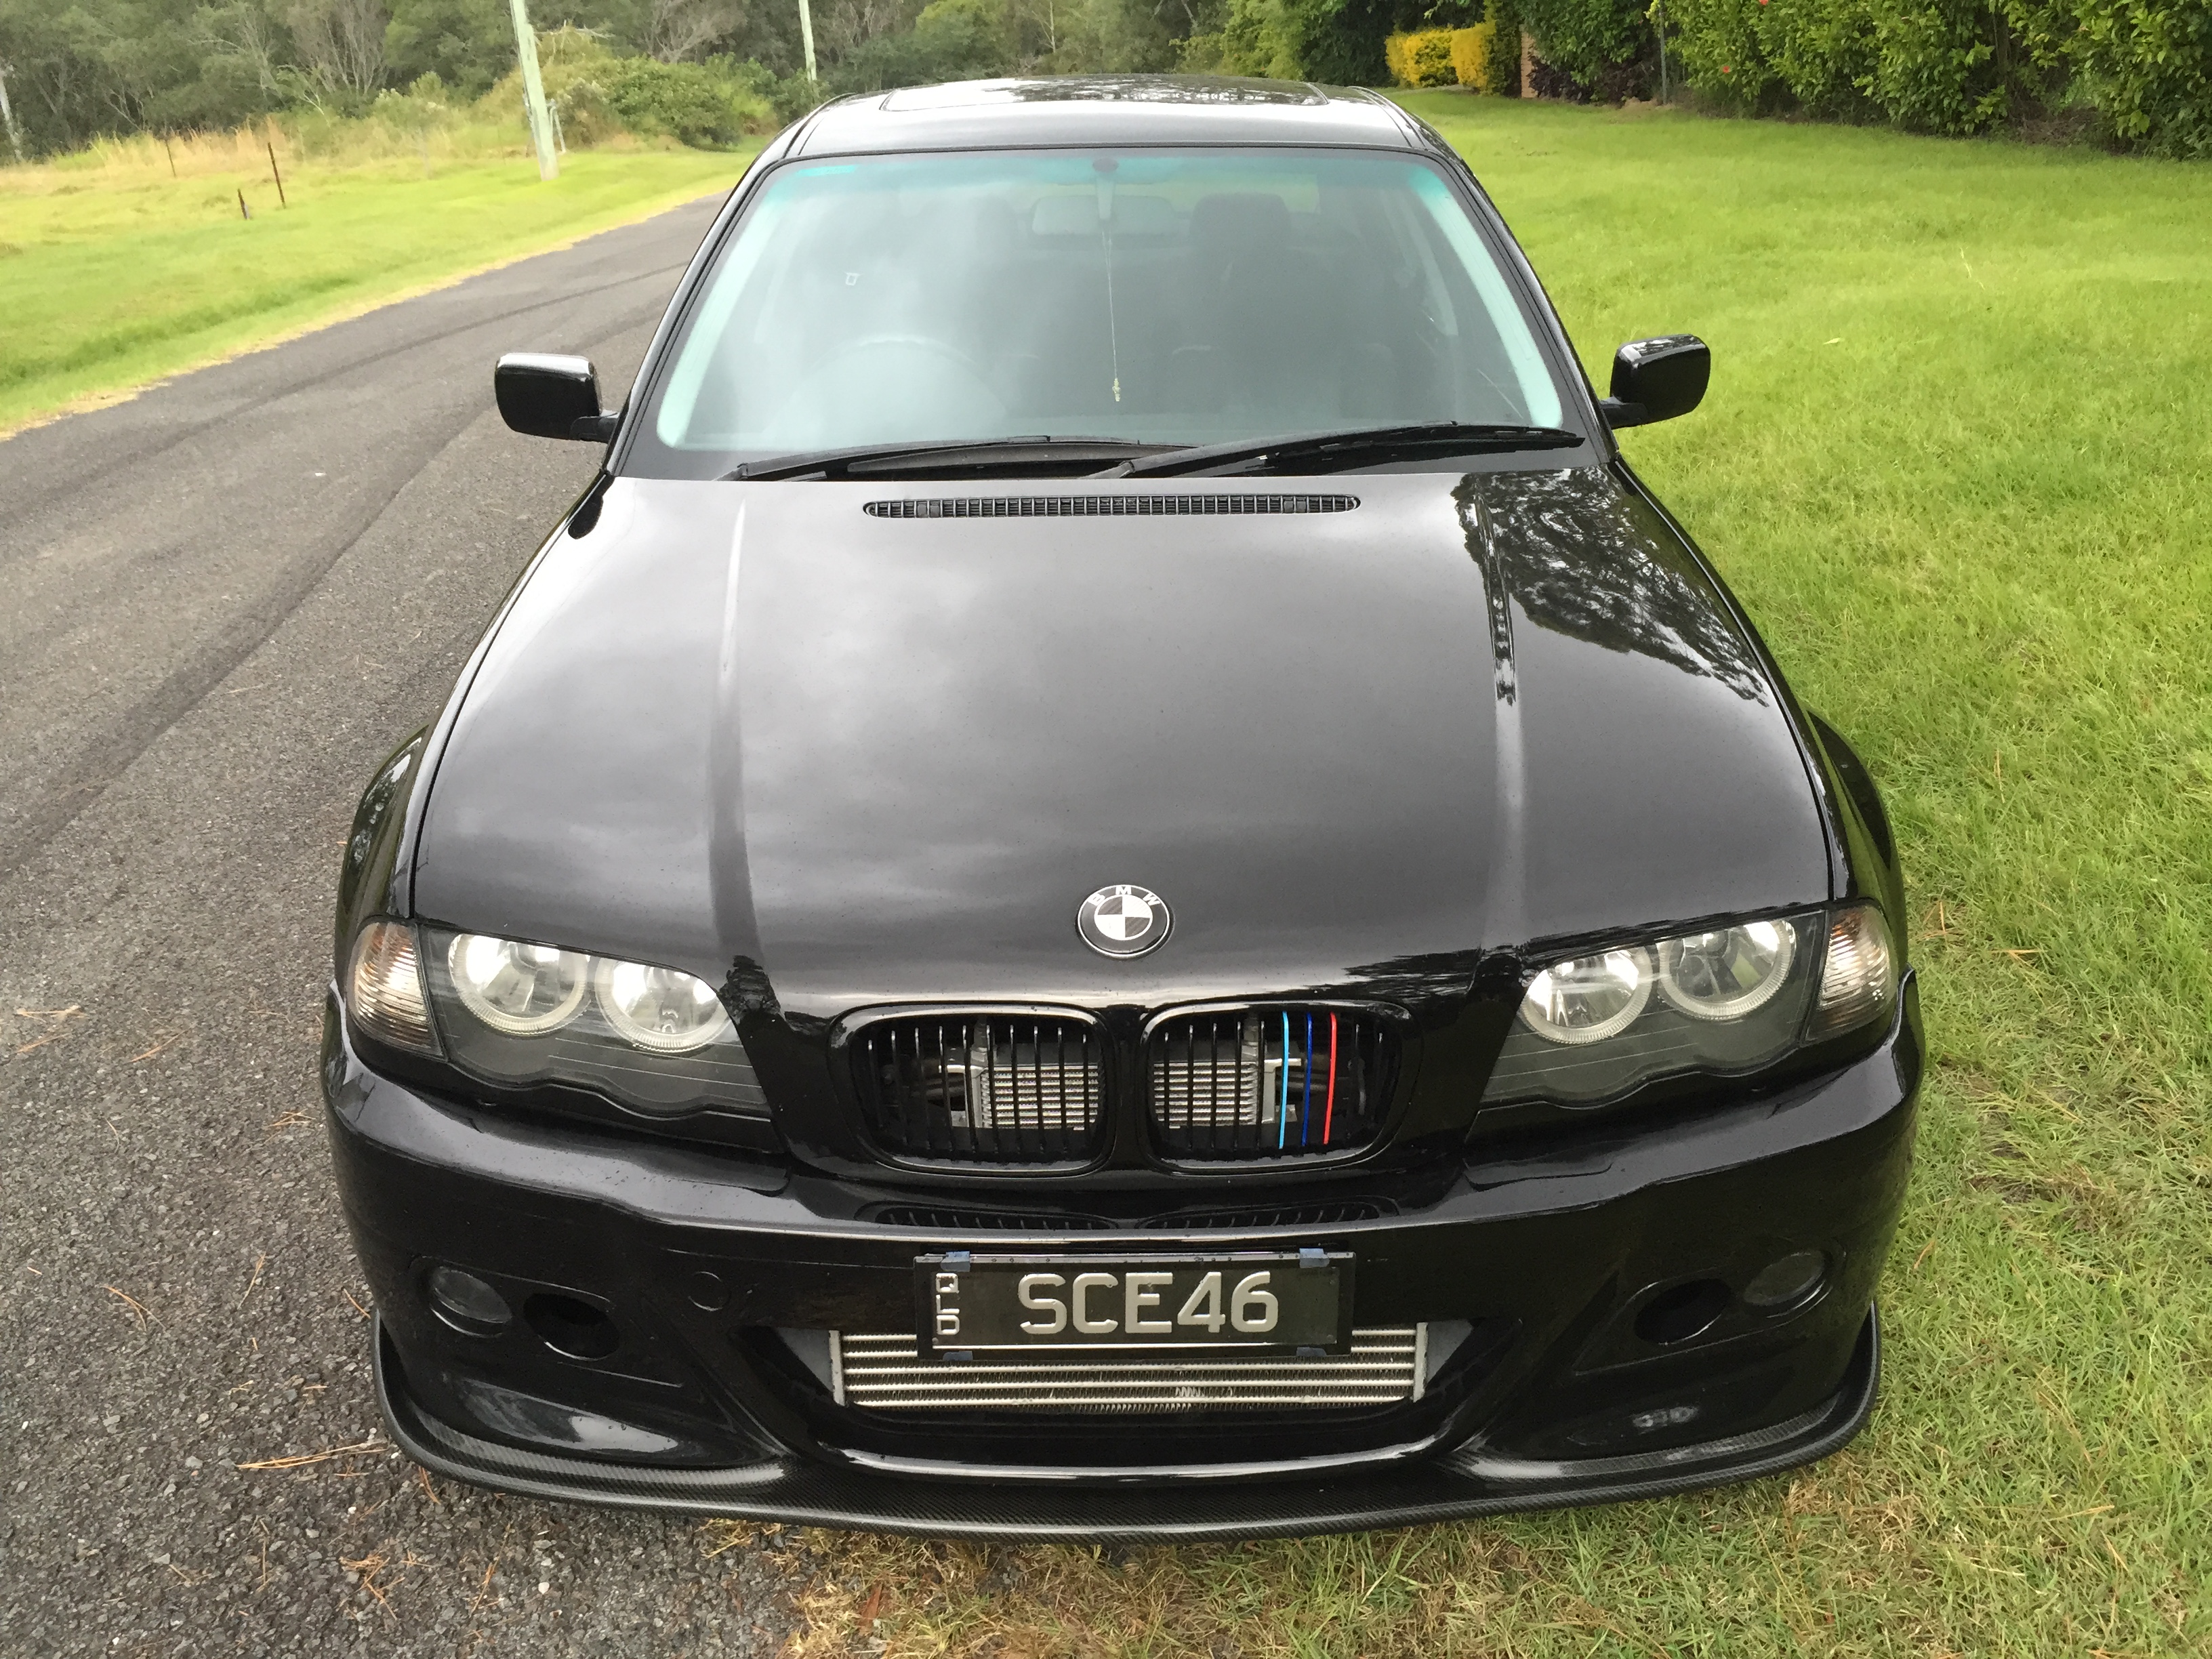 2000 BMW 323i For Sale or Swap QLD Brisbane South 2631663